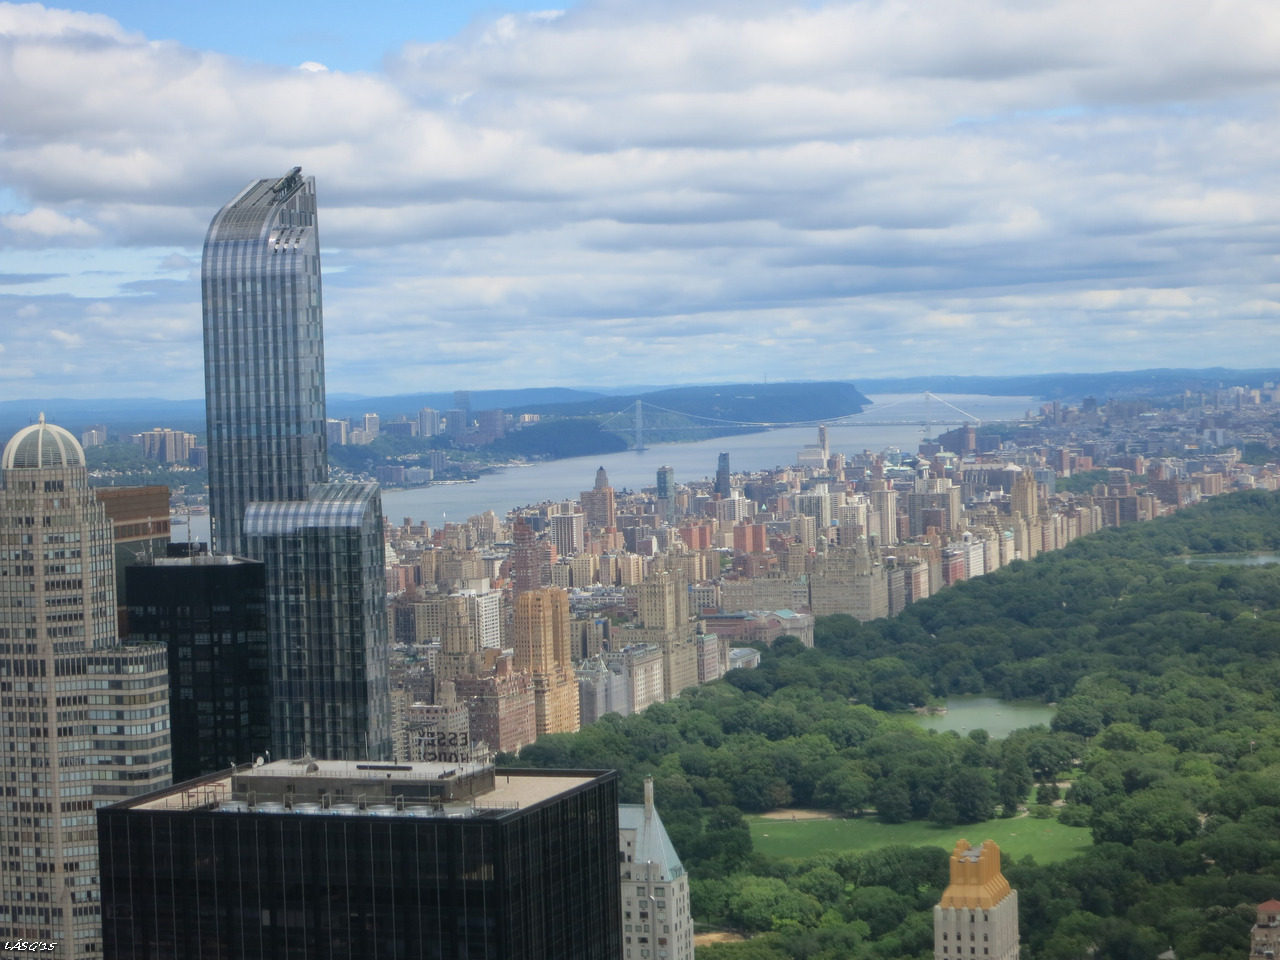 A Central-Park a Rockefeller tetejéről, a kép közepe táján lakunk a házrengeteg közepén.